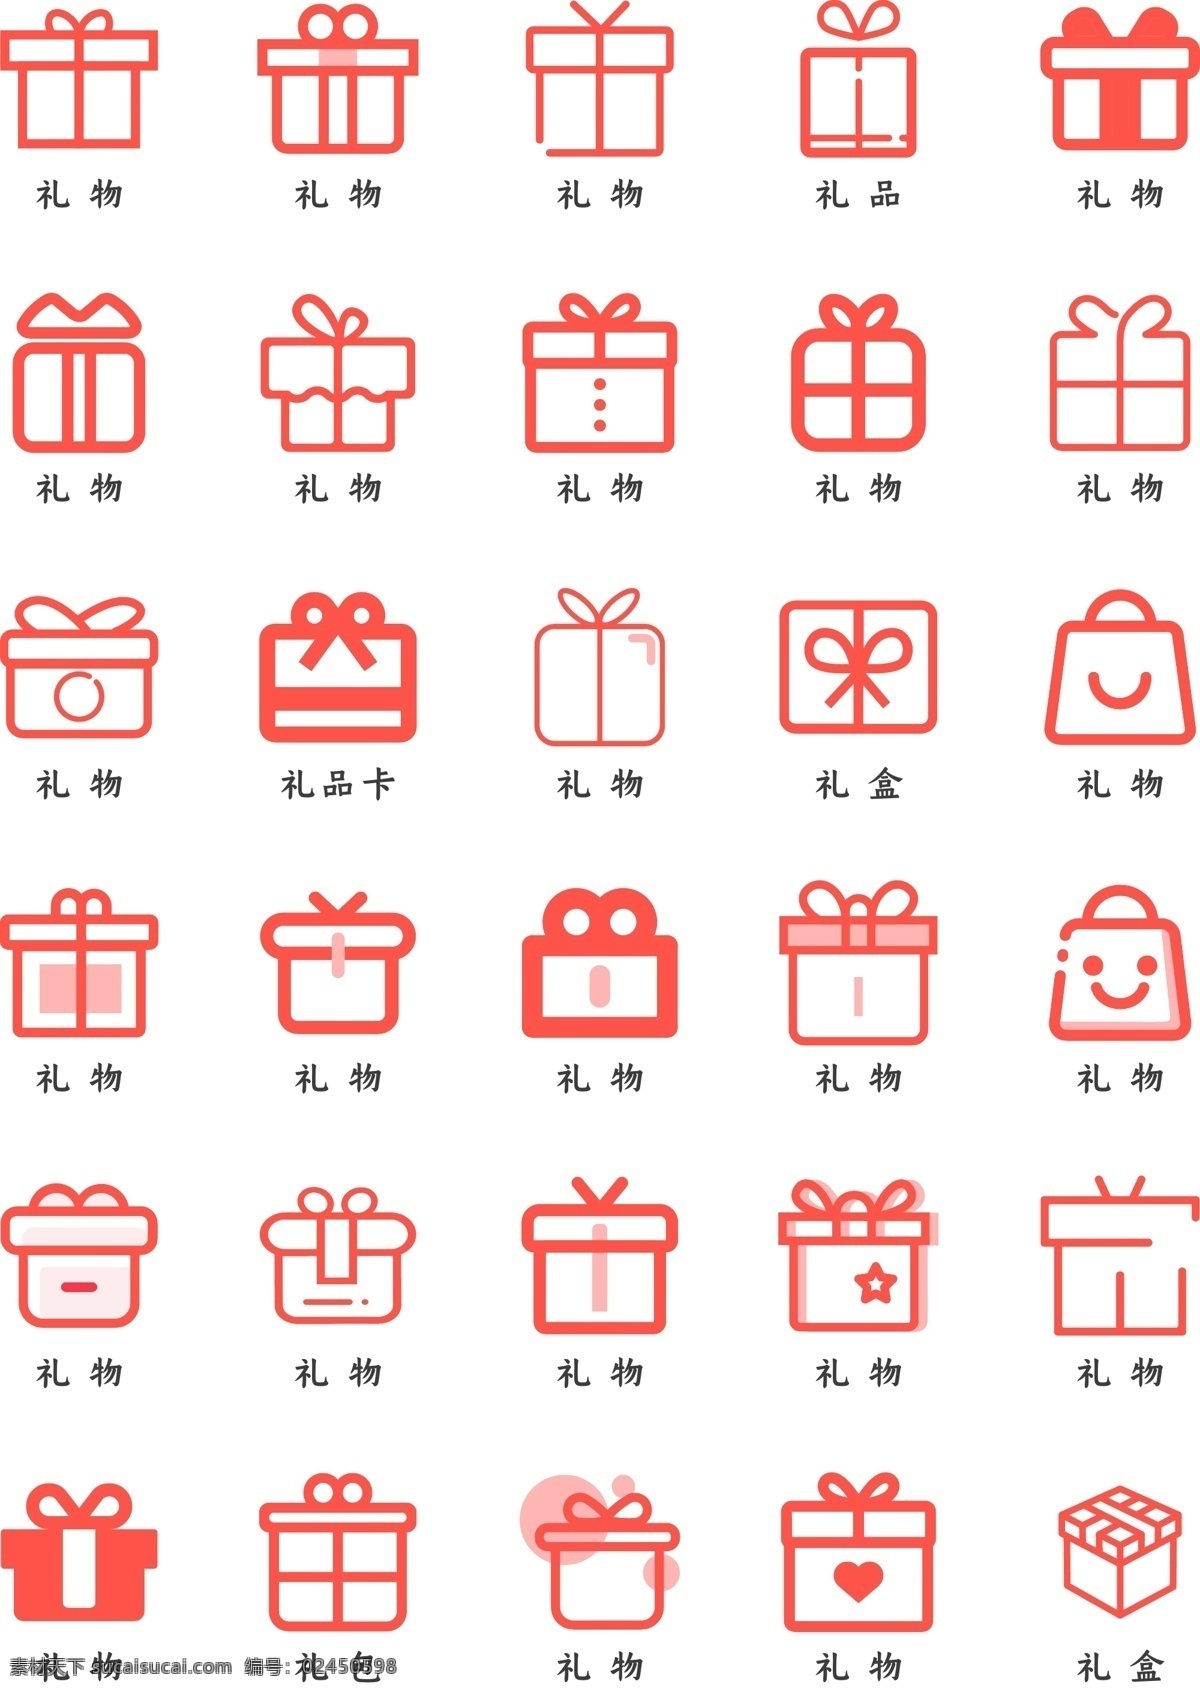 礼物图标图片 礼物图标 礼物图标设计 橙色图标 橙色礼物图标 图标 移动界面设计 图标设计